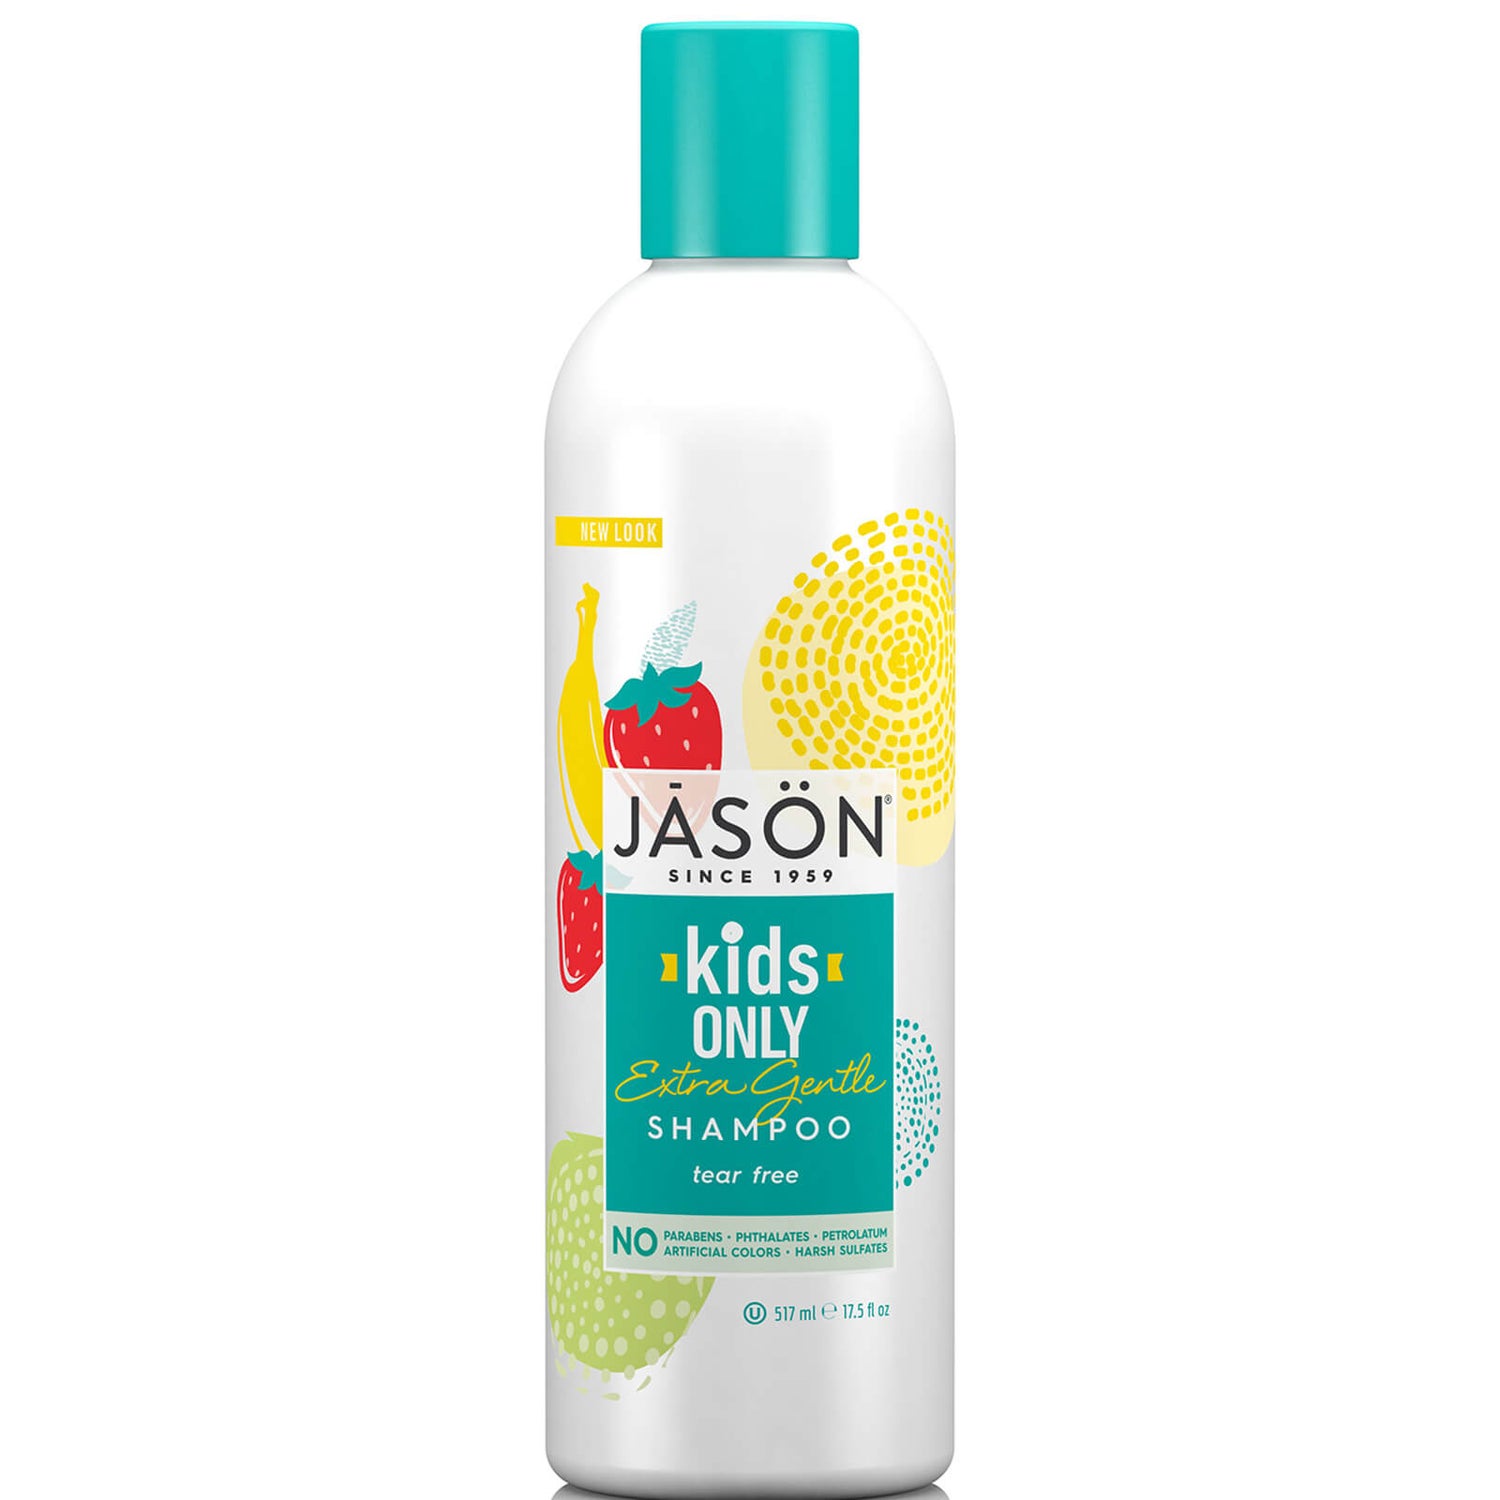 Champú Extra Suave de JASON Kids Only (517 ml)